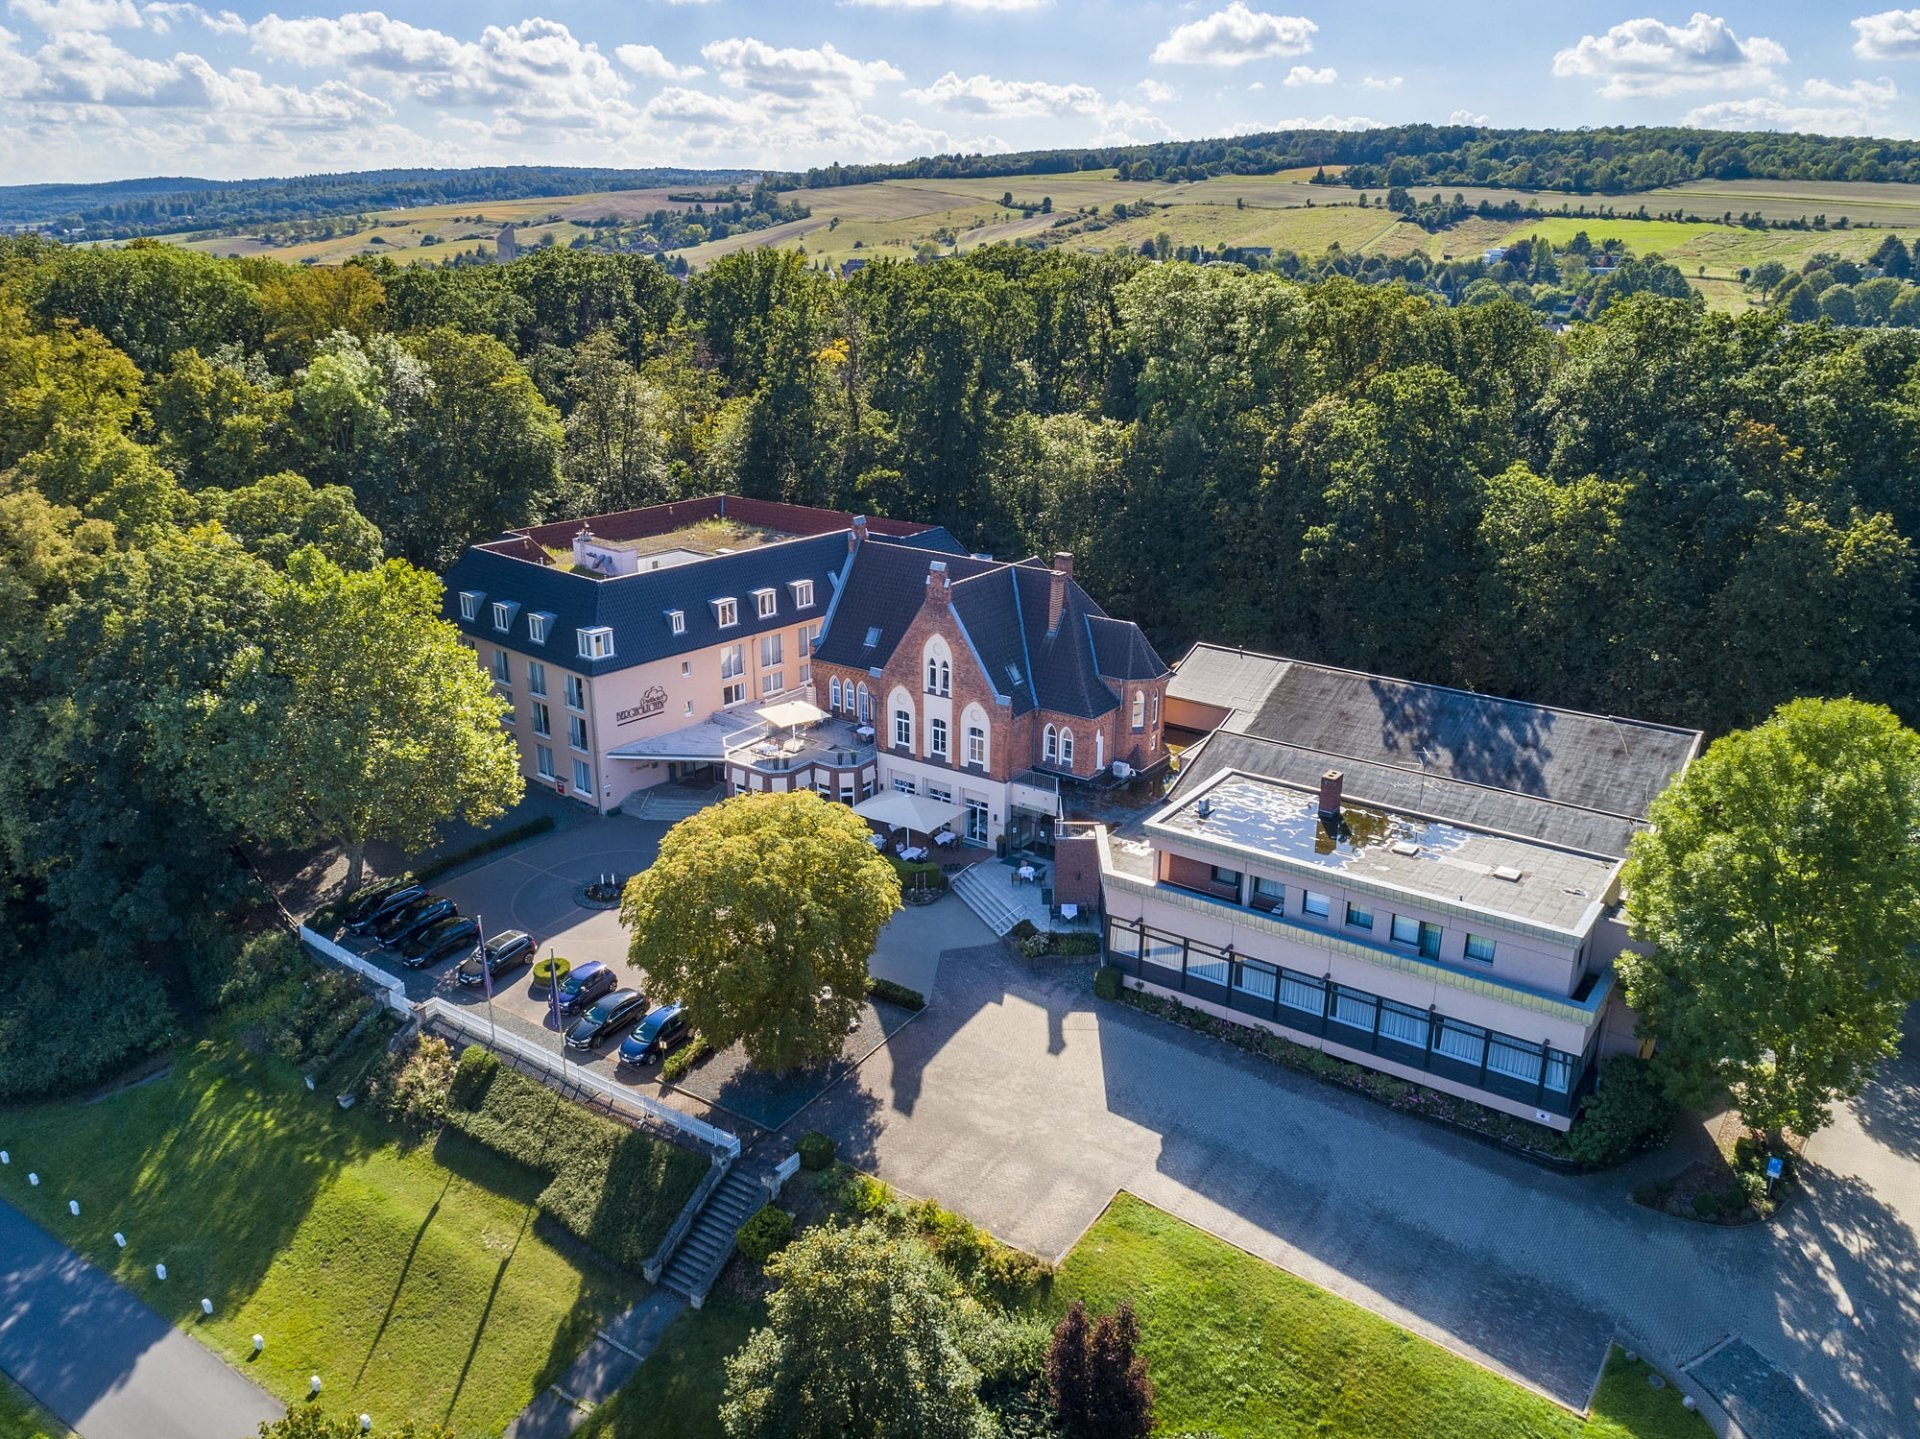 2 Tage Adventszauber 2023 – Parkhotel Berghölzchen (4 Sterne) in Hildesheim, Niedersachsen inkl. Halbpension